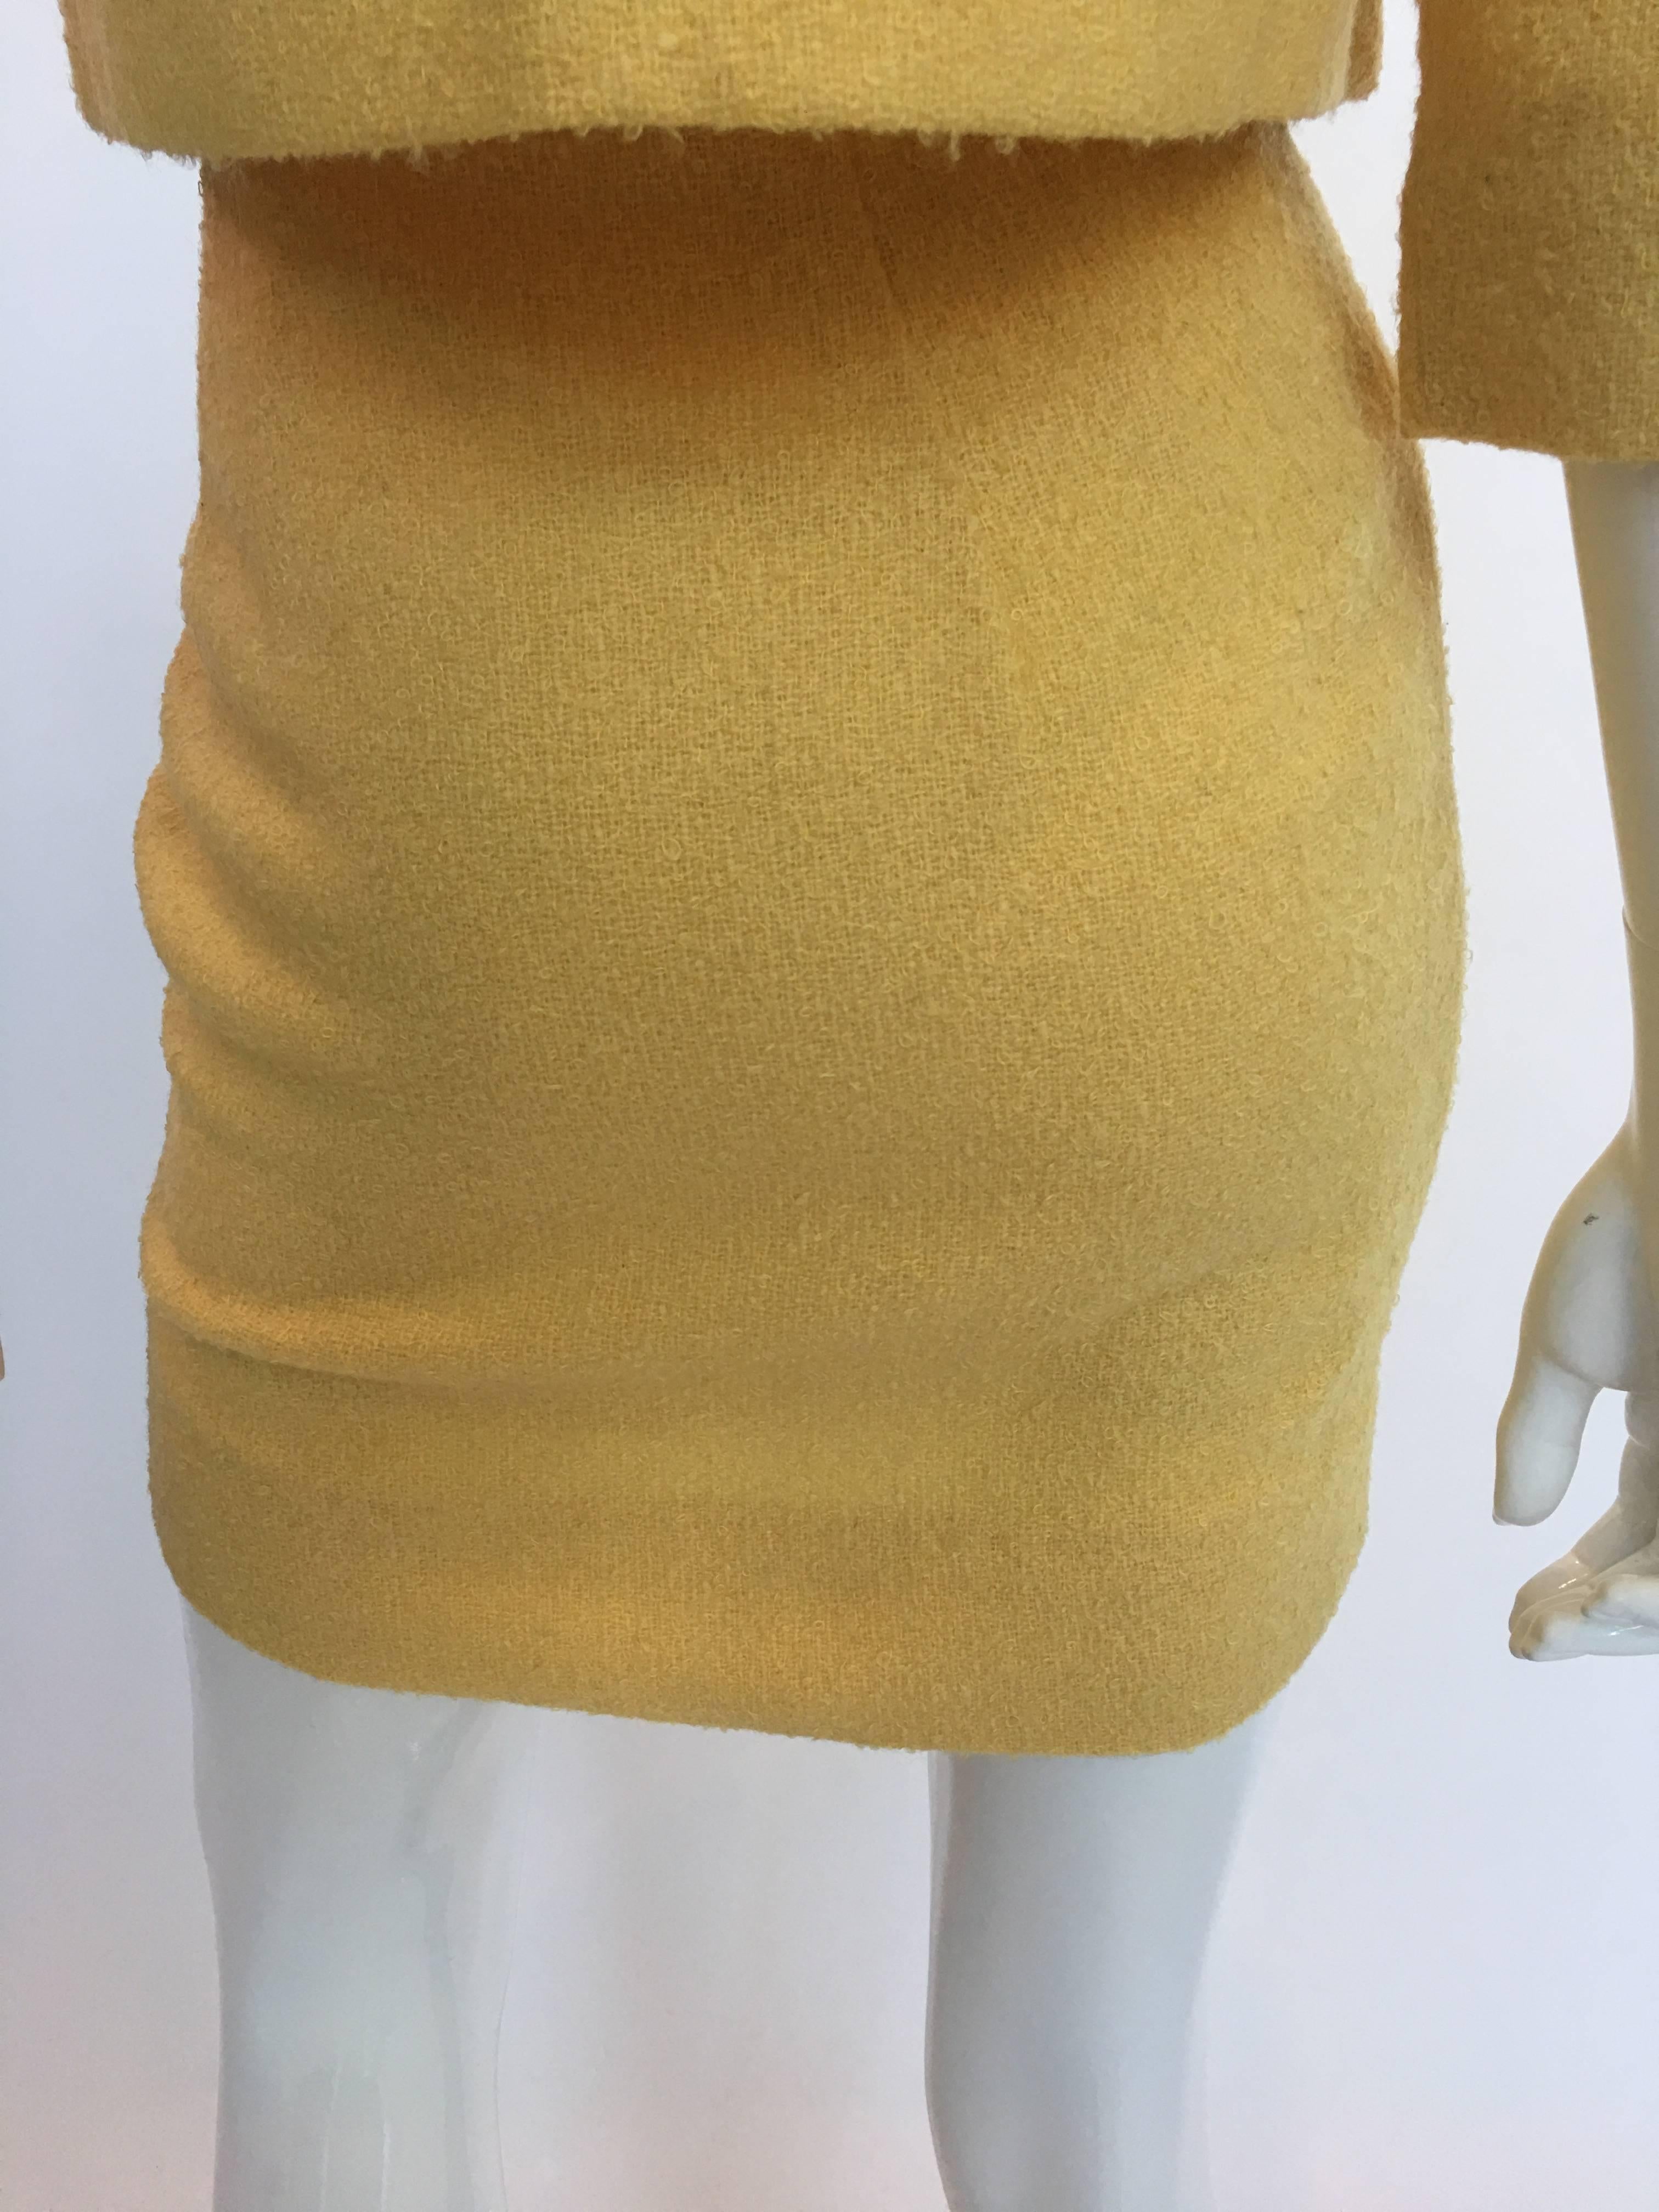 Jaune Tailleur jupe 2 pièces Jackie O Mod style papillon jaune beurre, années 1960 en vente